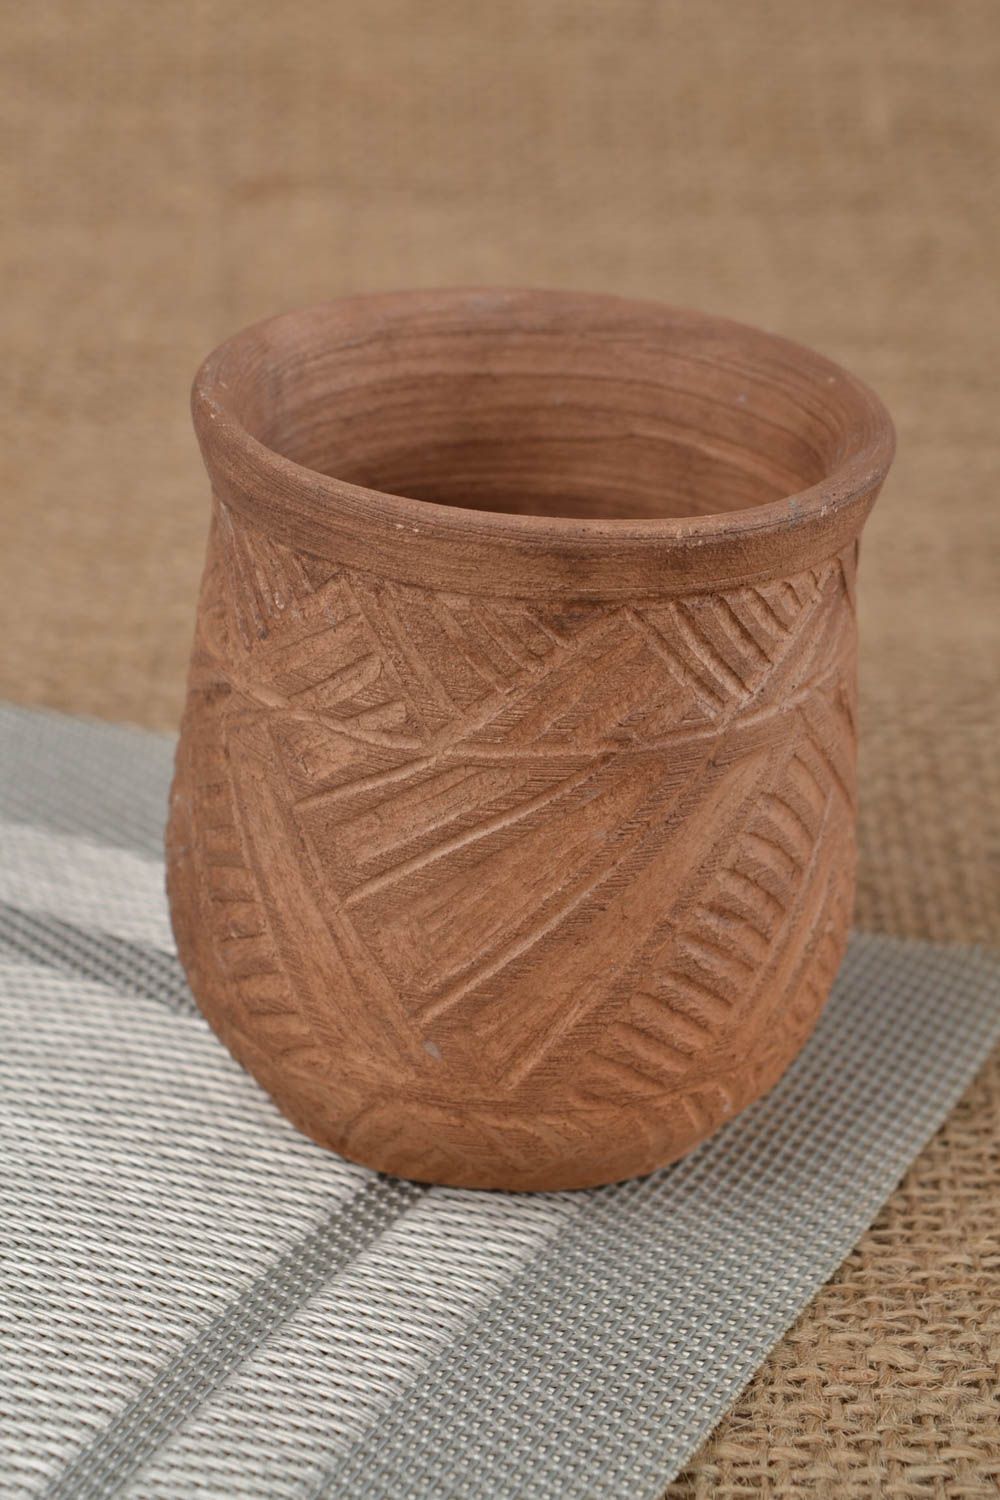 Ceramic coffee cup with no handle 8 oz, 0,39 lb photo 1